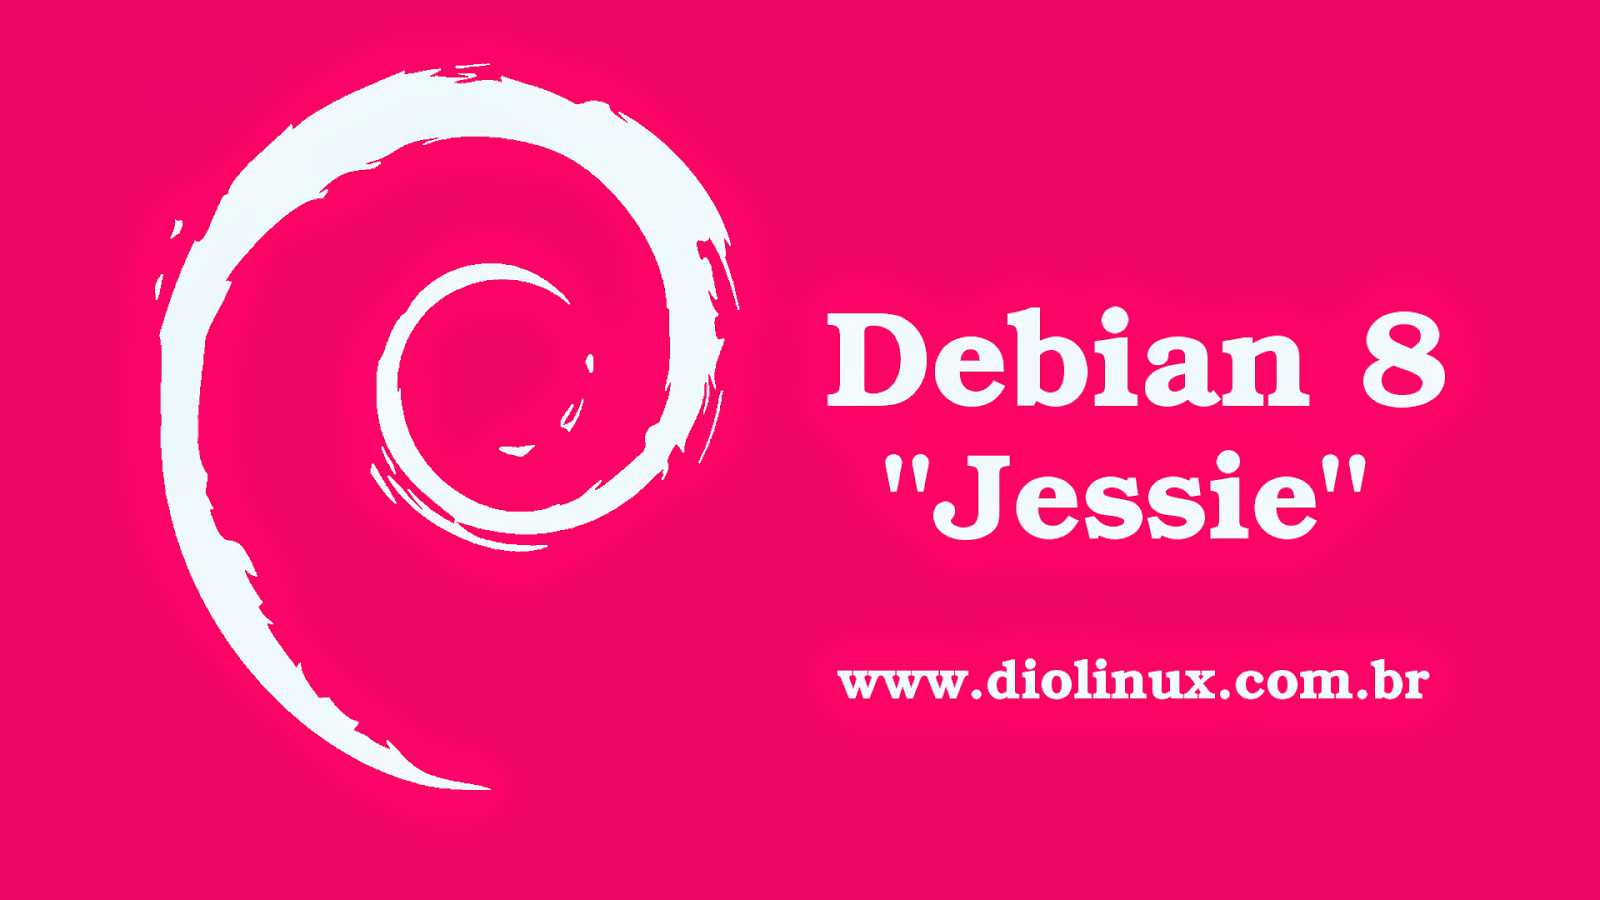 Lançado o novo Debian 8 Jessie, confira as novidades!